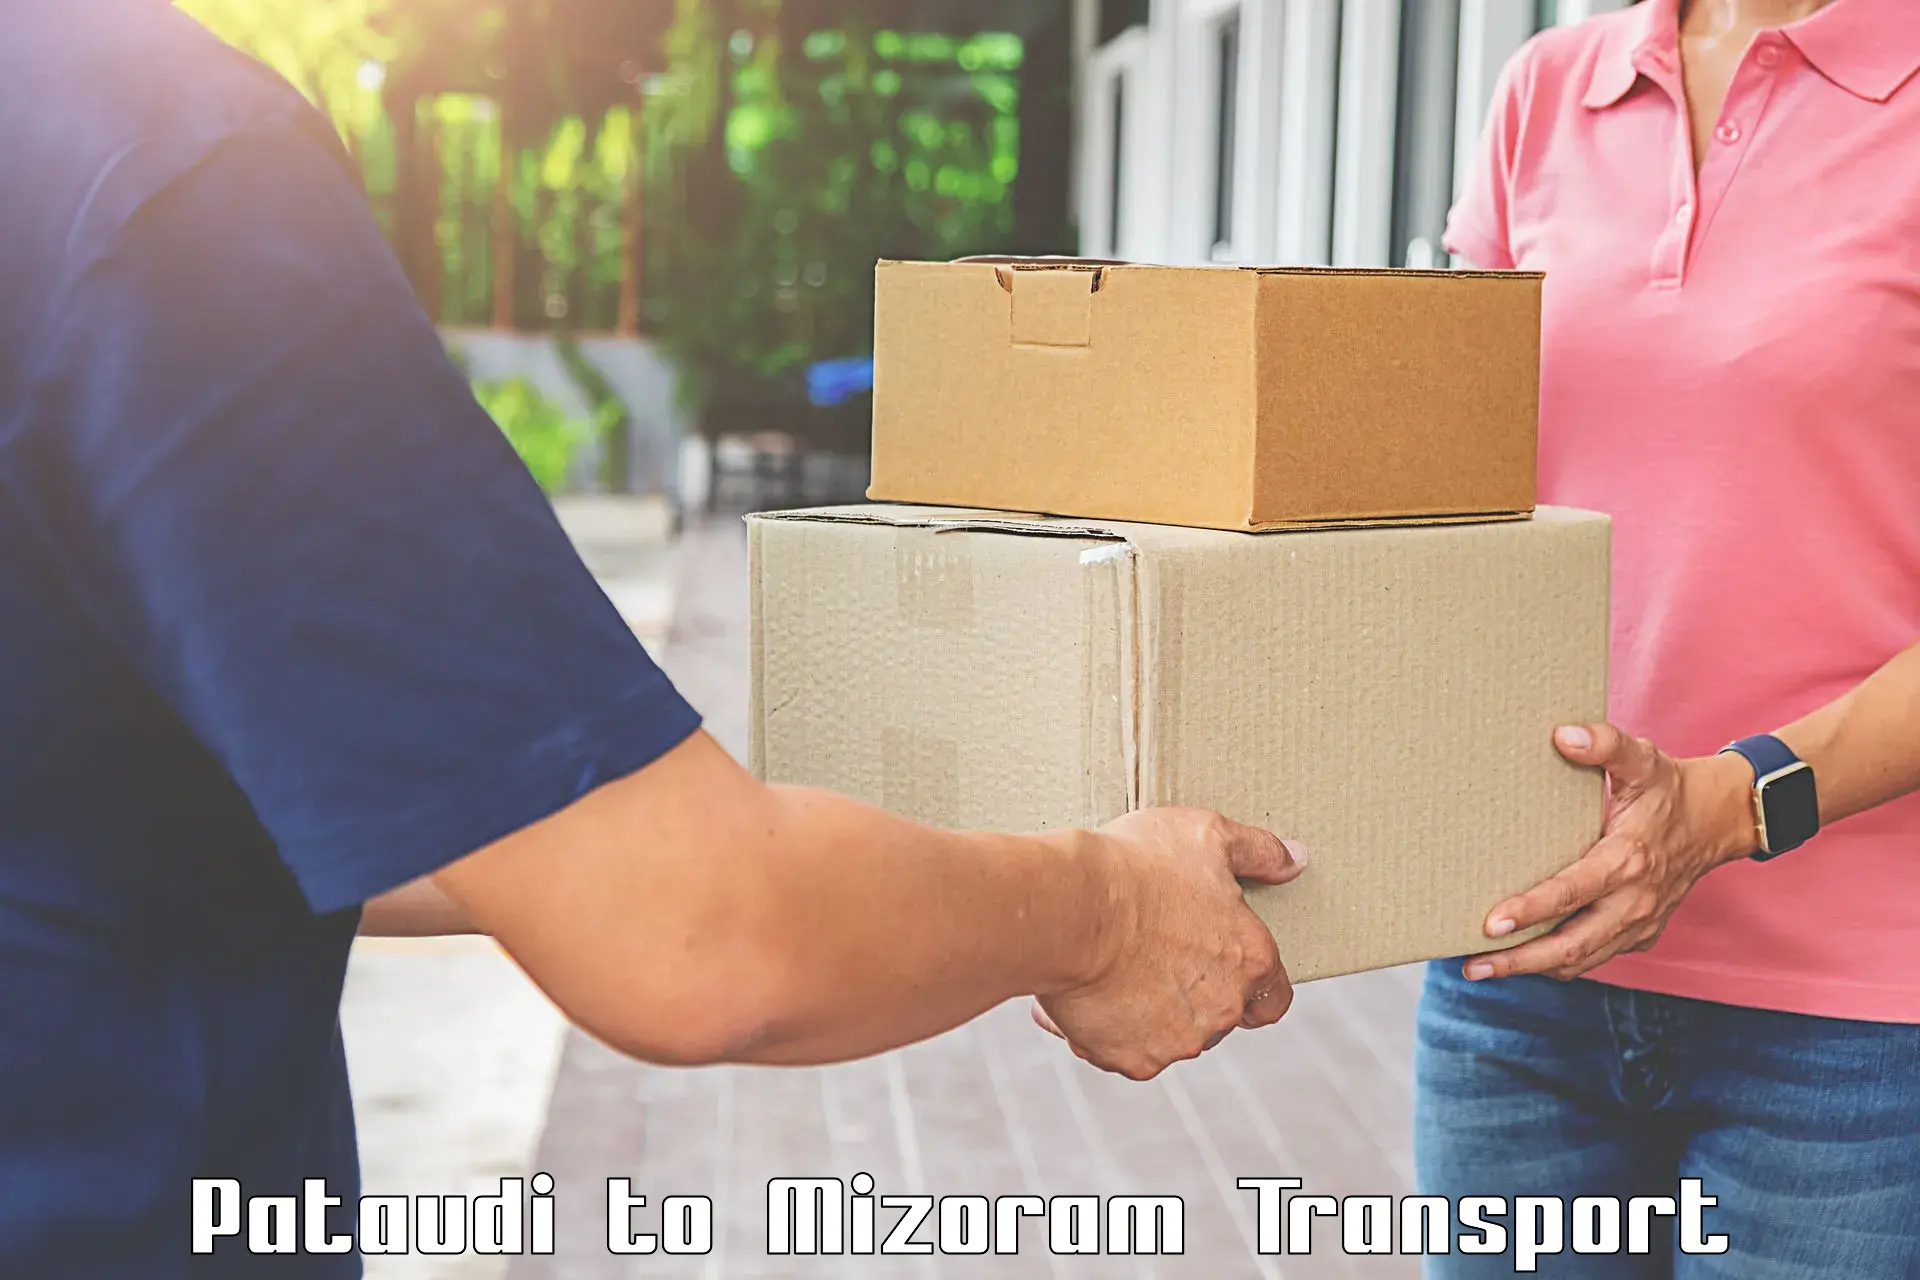 Lorry transport service Pataudi to Mizoram University Aizawl